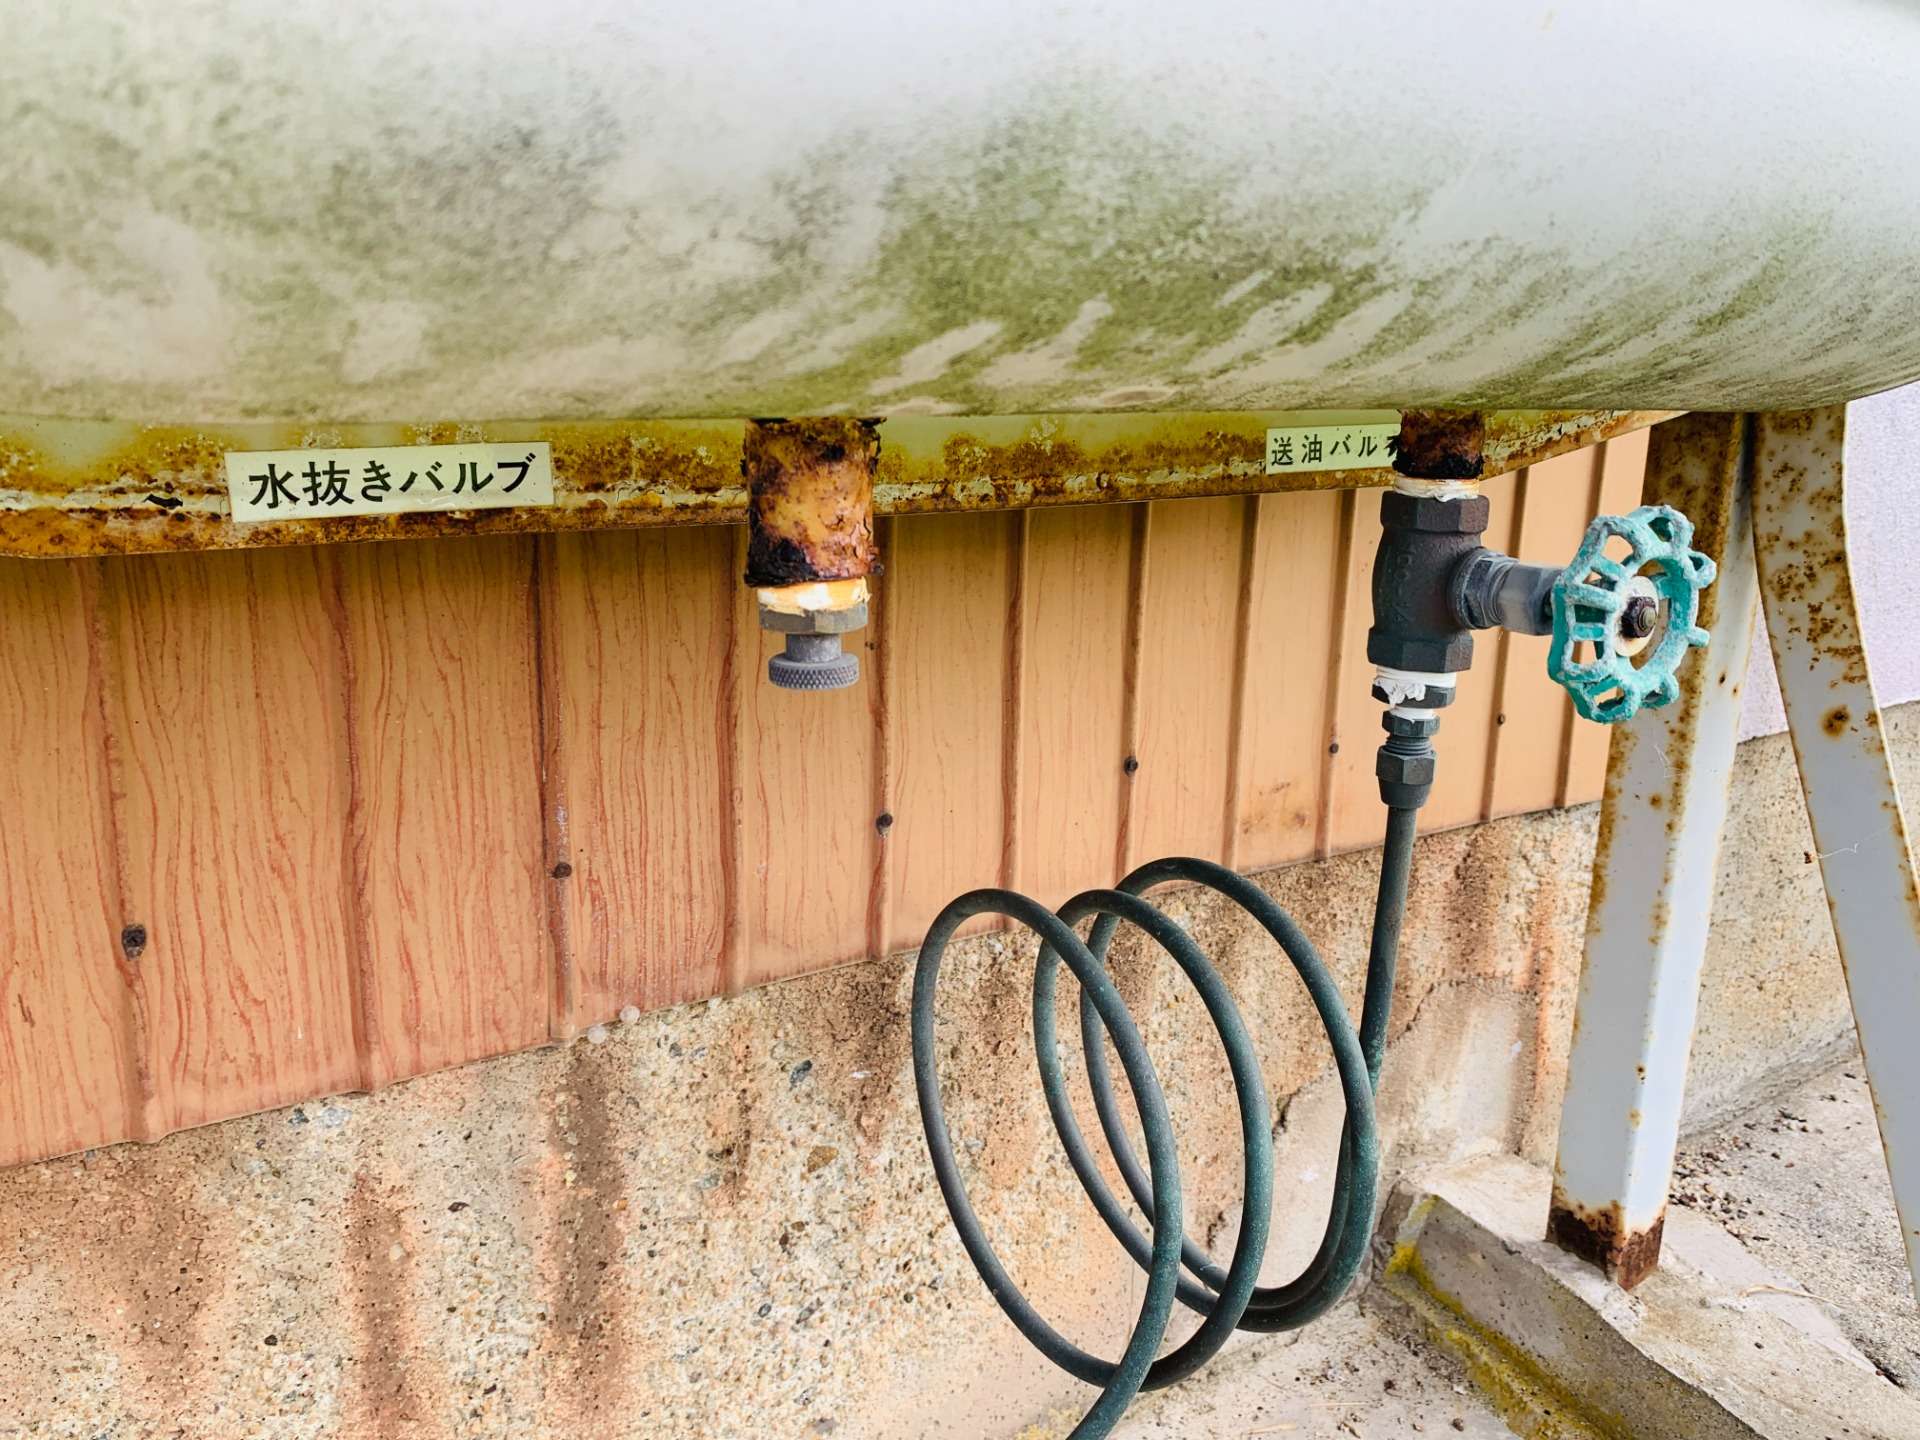 灯油タンク オイルタンク の水抜き方法と水を抜く理由 ずっと安心して使っていただけるサービス 石川 富山 福井で電気工事から水道工事を行うczen Lighting 電工